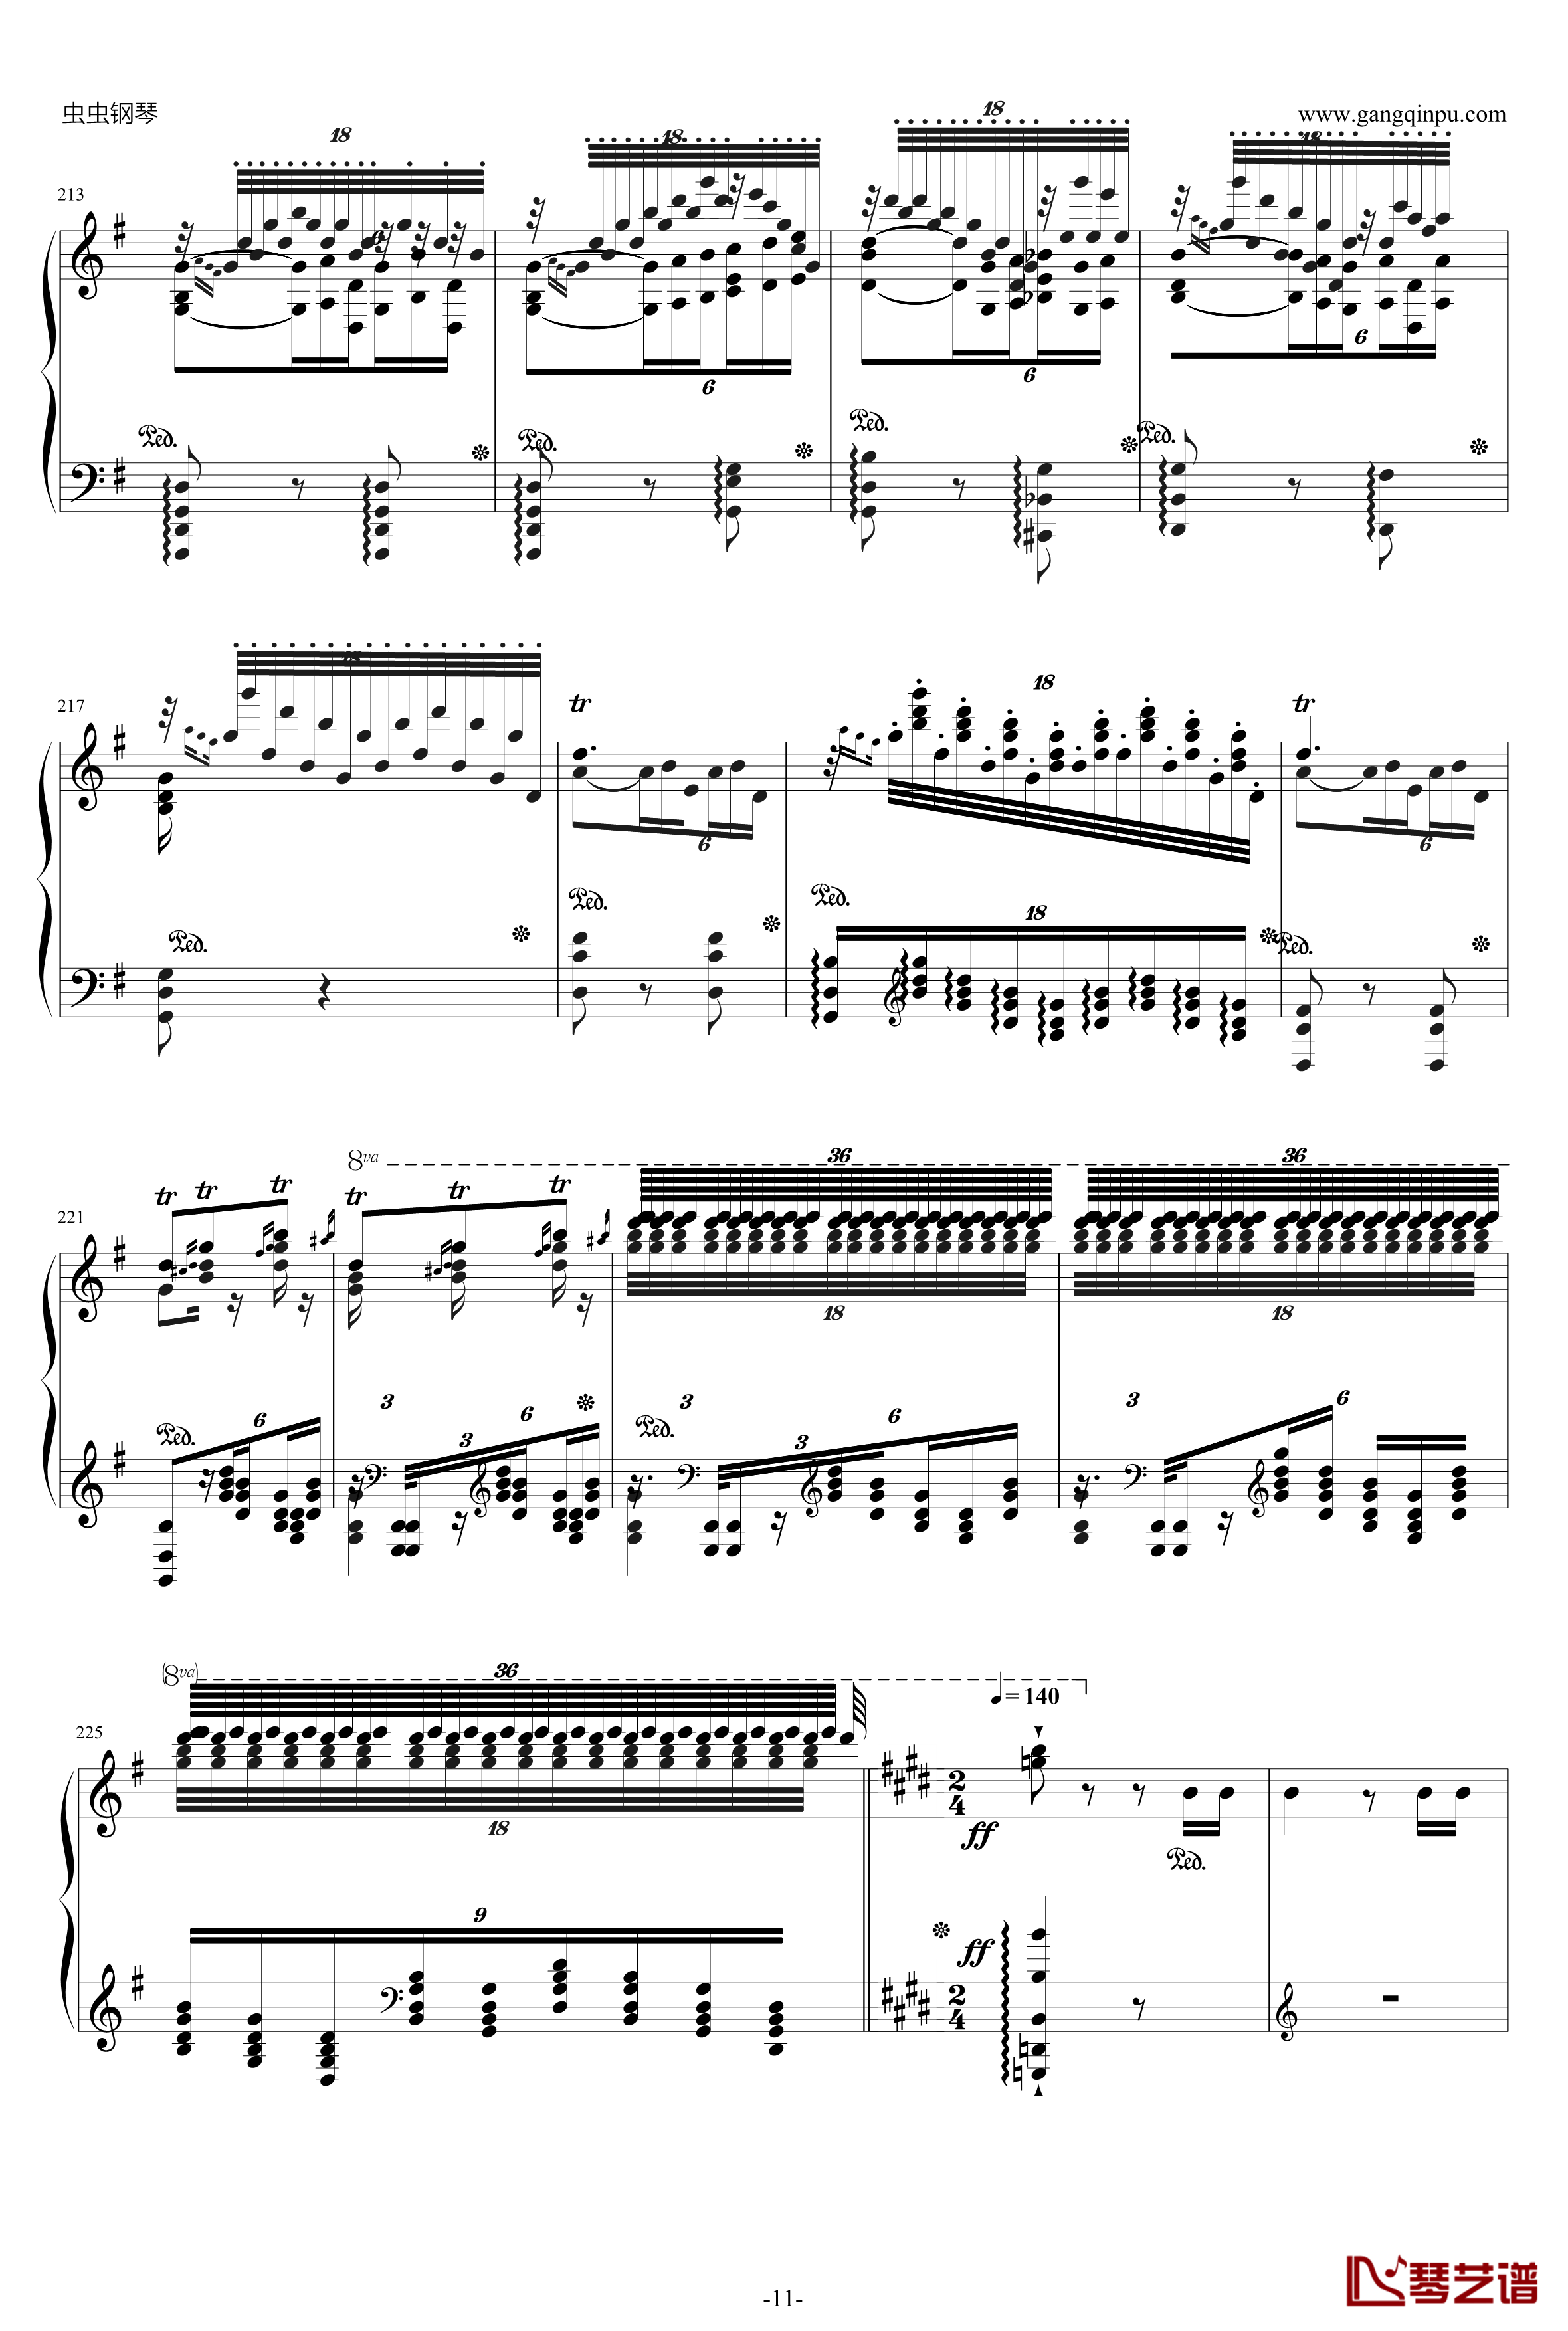 威廉·退尔序曲钢琴谱-李斯特S.55211